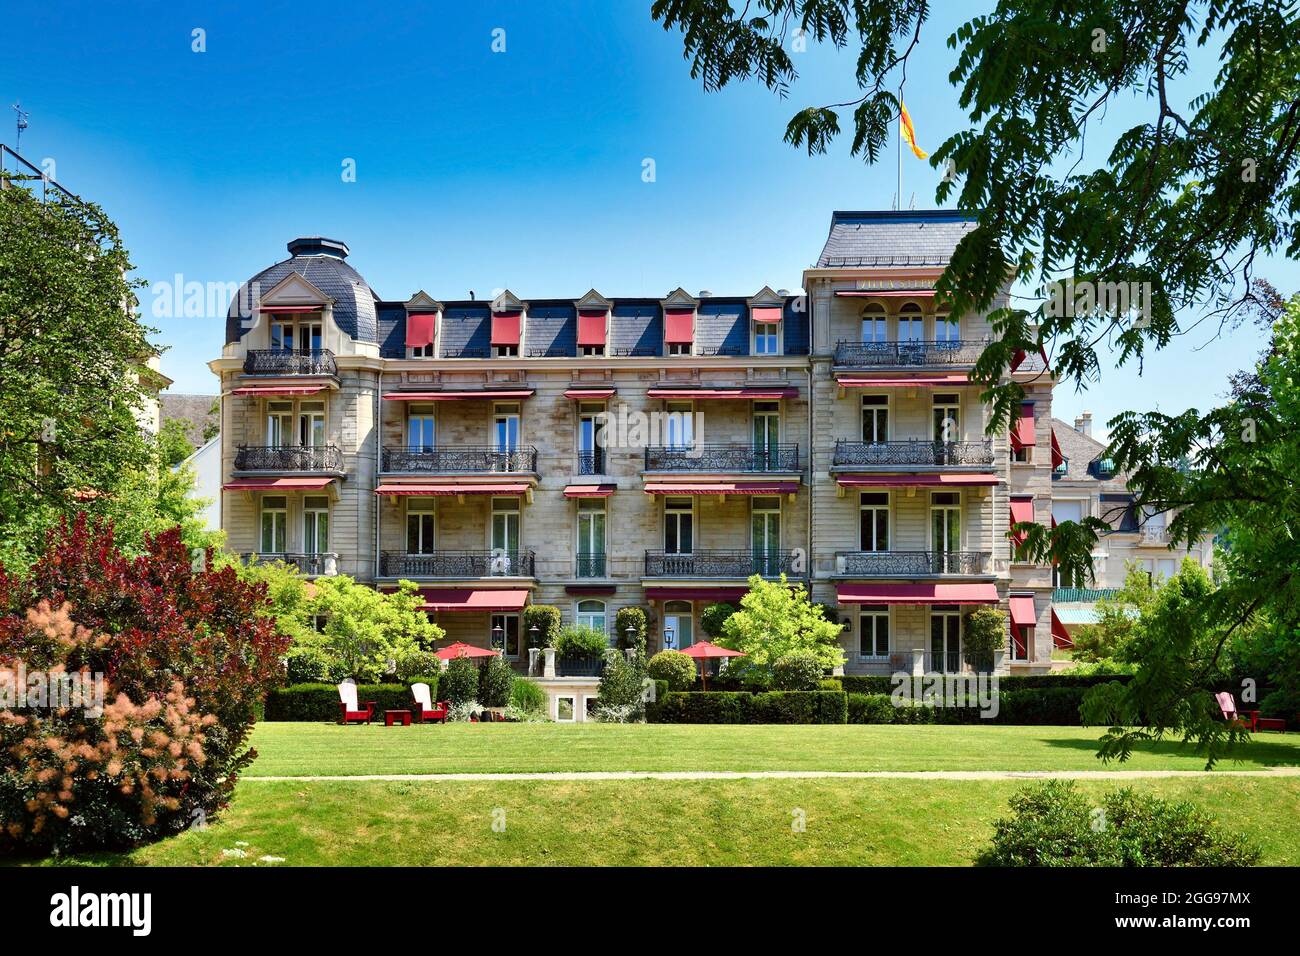 Baden-Baden, Germania - Luglio 2021: Hotel chiamato 'Villa Stephanie' situato nel parco pubblico chiamato 'Lichtentaler Allee' Foto Stock